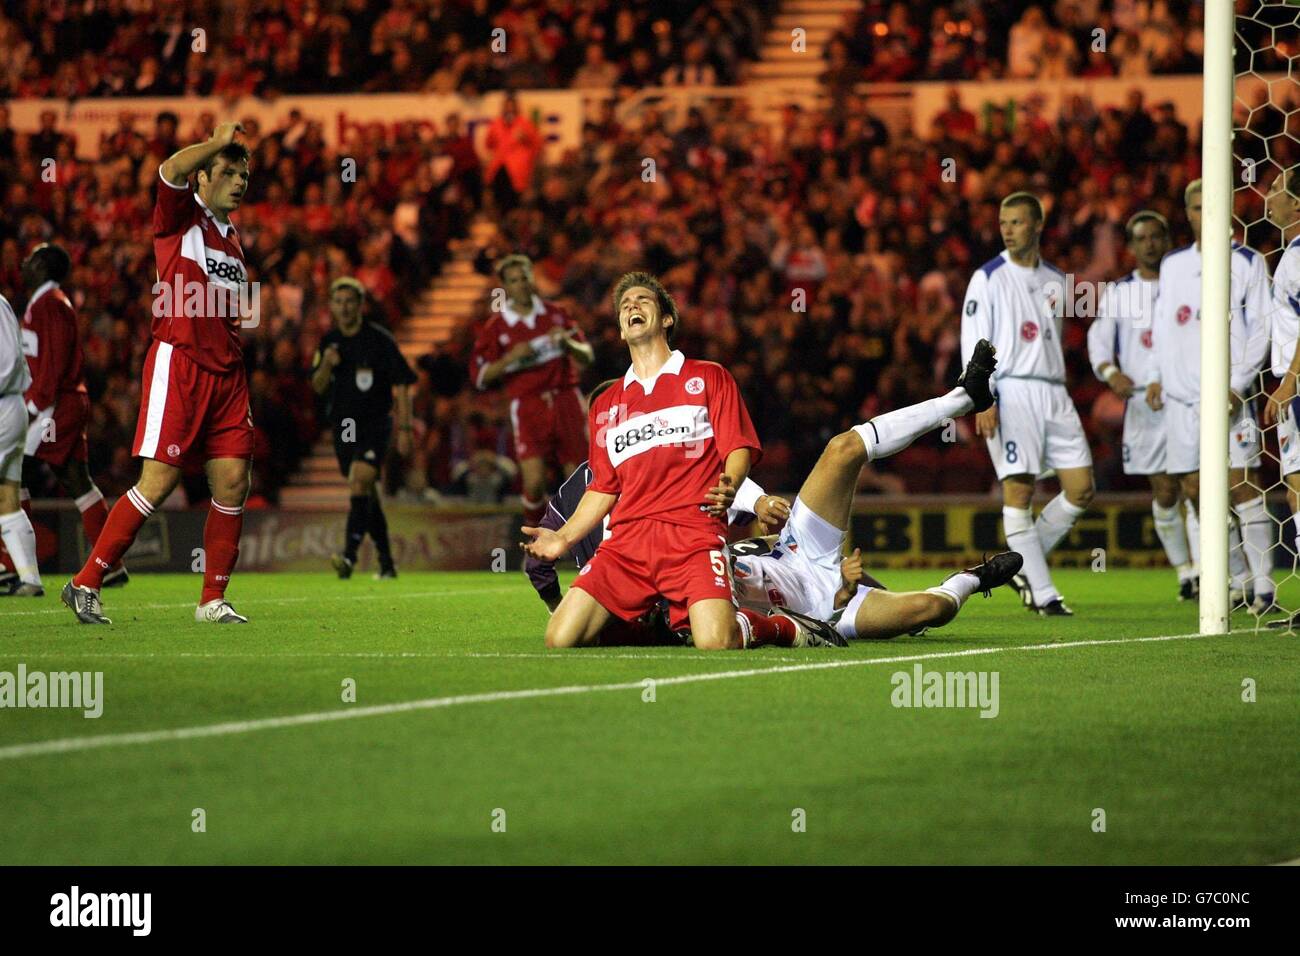 Chris Rigot, jugador de Middlesbrough, se arriesgue a perder una oportunidad durante la primera ronda de la Copa de la UEFA, primera pierna, empate en el Riverside Stadium, Middlesbrough. Foto de stock